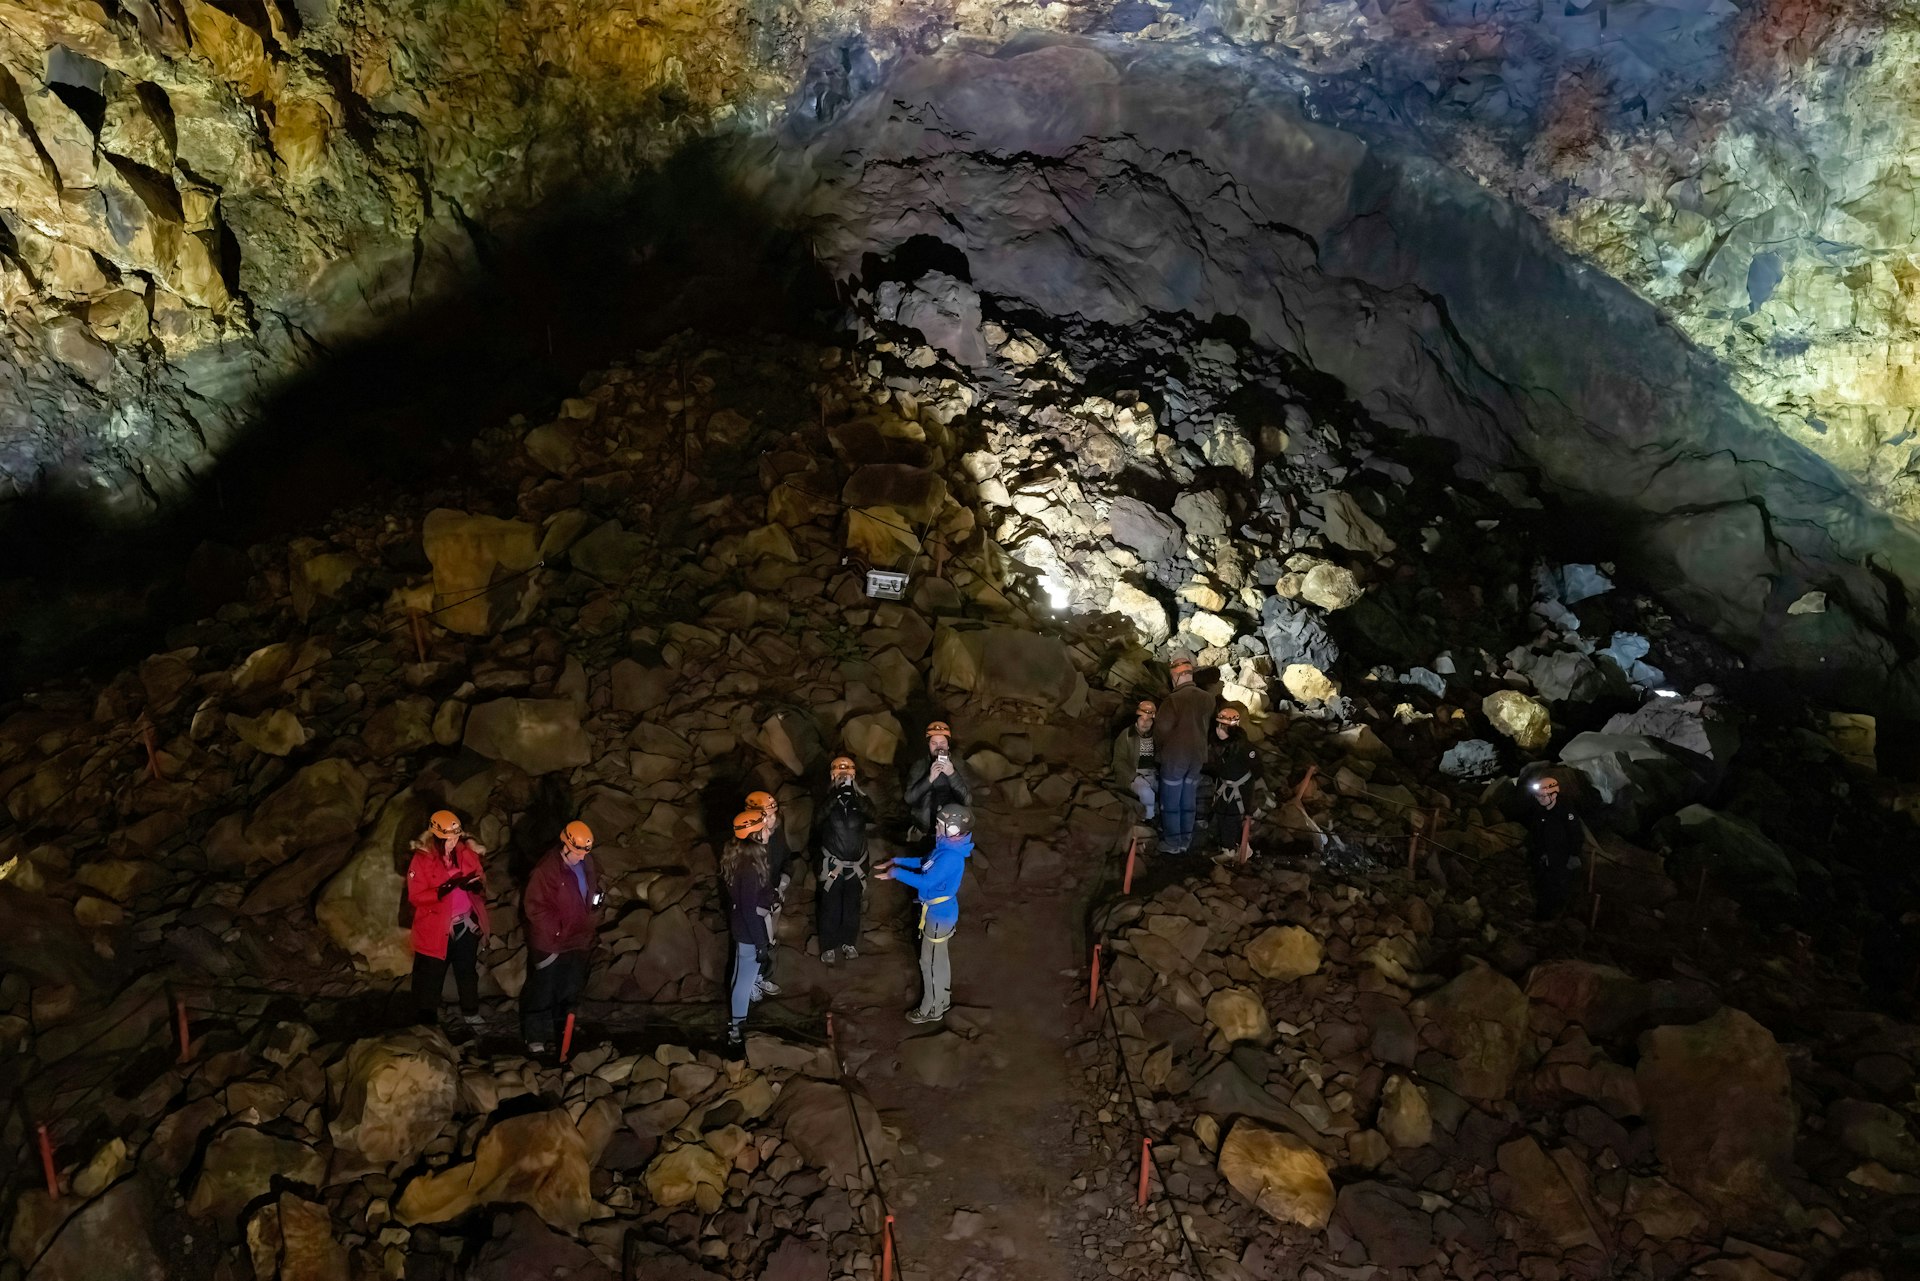 People walking through the cavern of Þríhnúkagígur volcano, Iceland